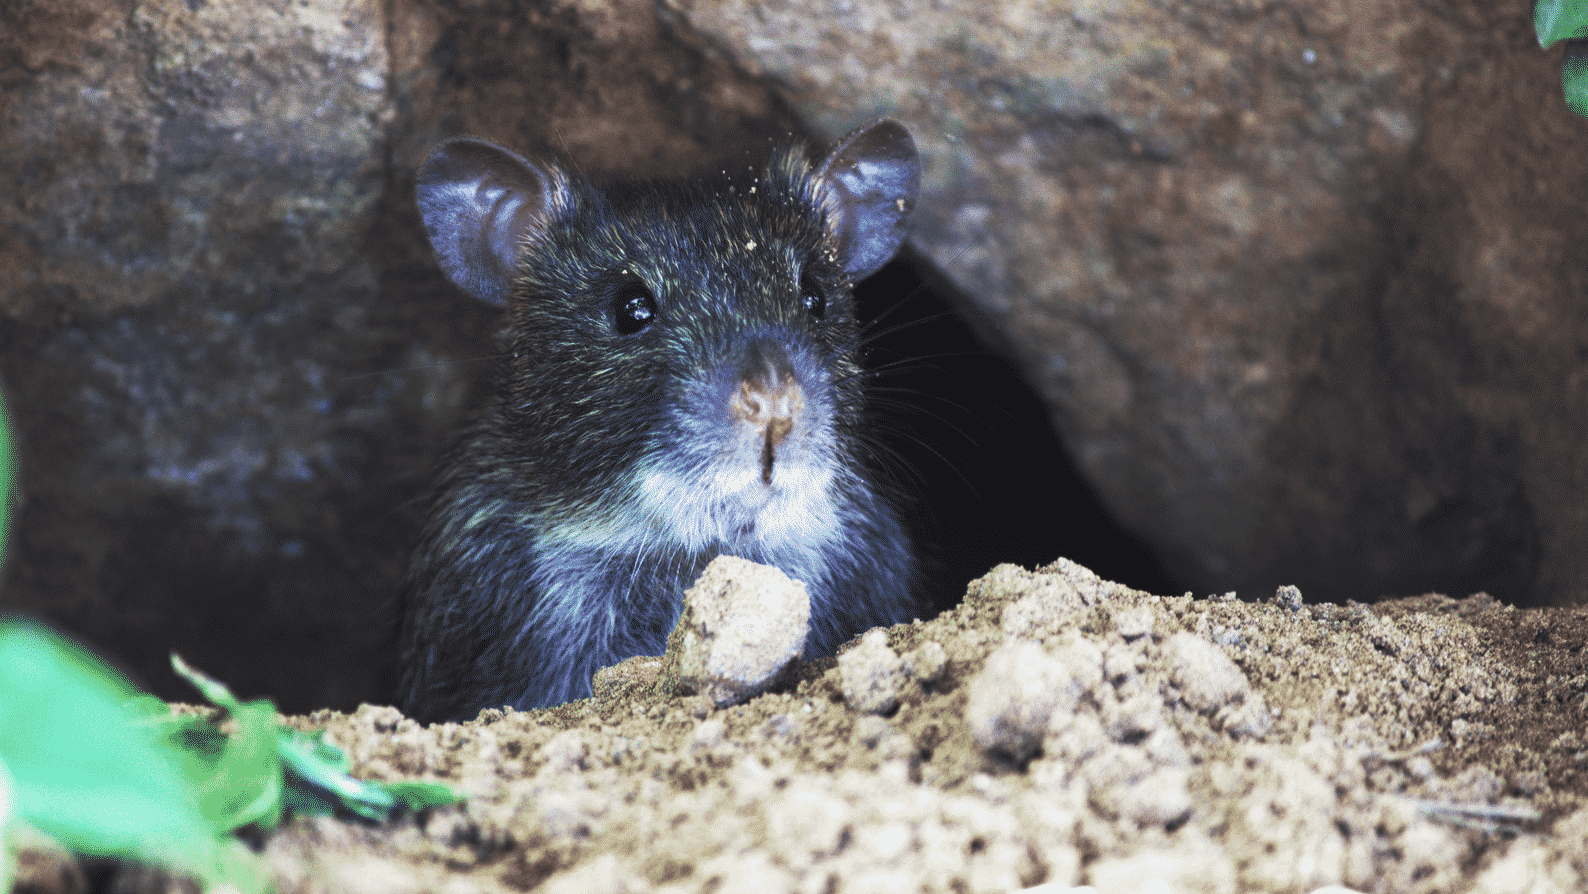 Che Cosa Odiano i Topi?  Odori Repellenti per Topi e Ratti